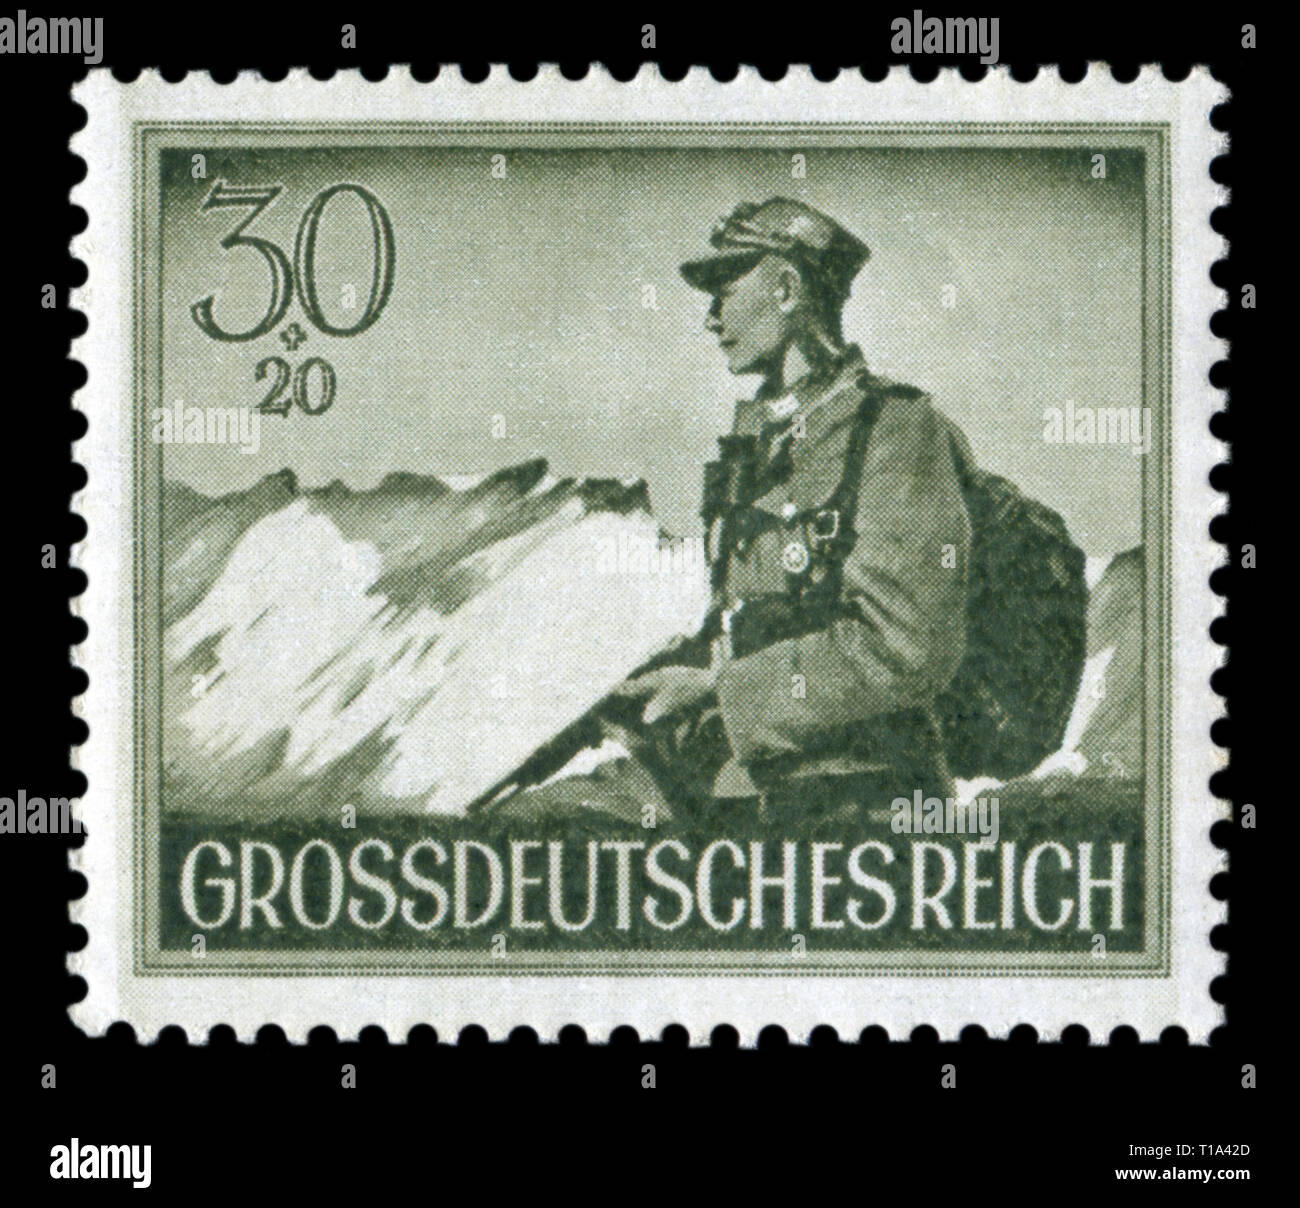 Timbre historique allemand : un soldat de l'infanterie de montagne Edelweiss. Journée de commémoration des soldats tombés, numéro 1944, Allemagne Banque D'Images